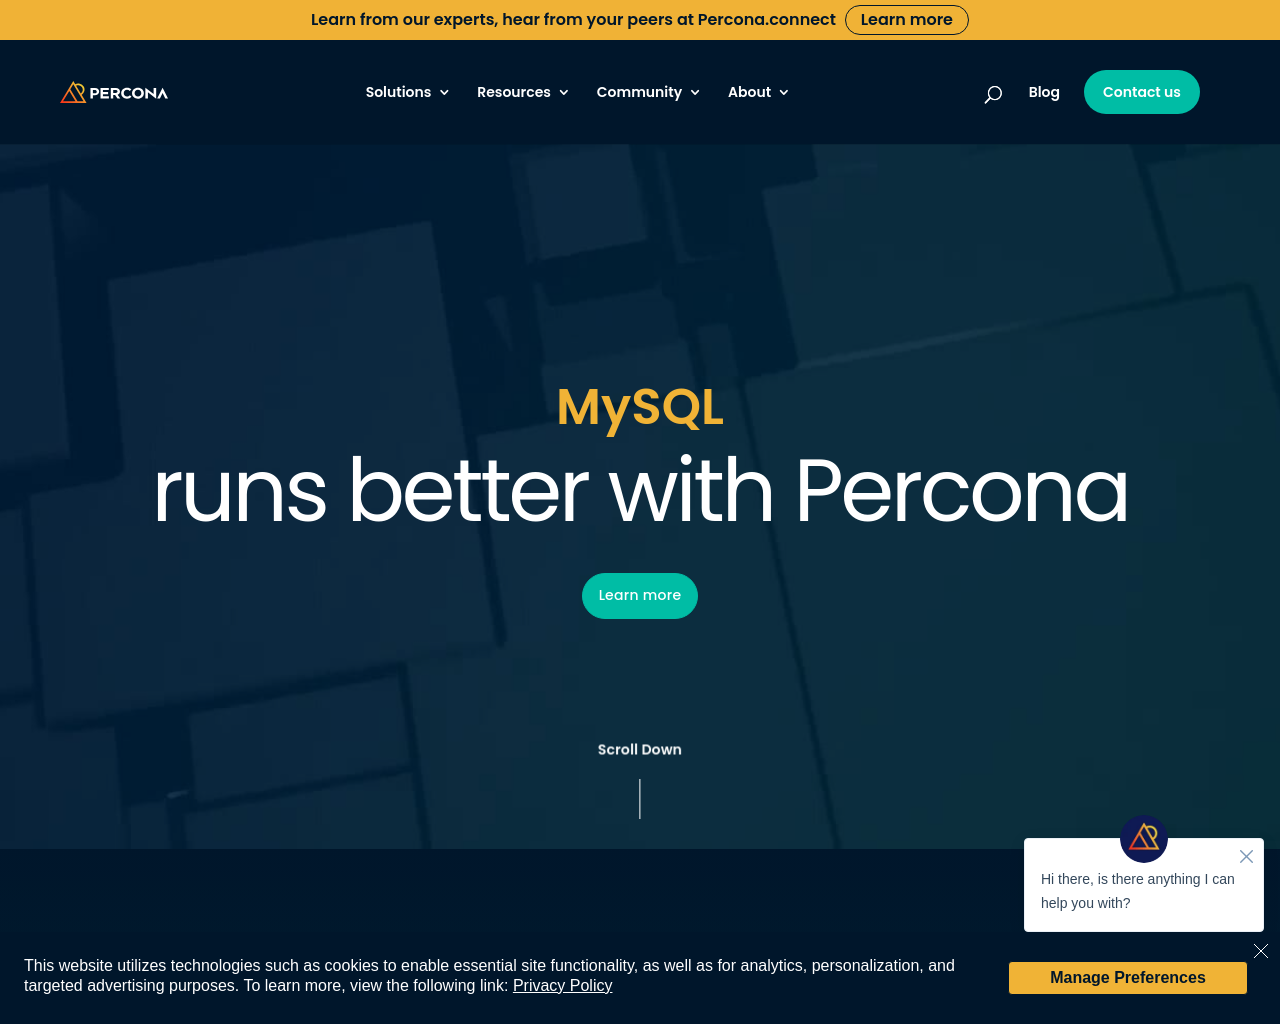 percona.com